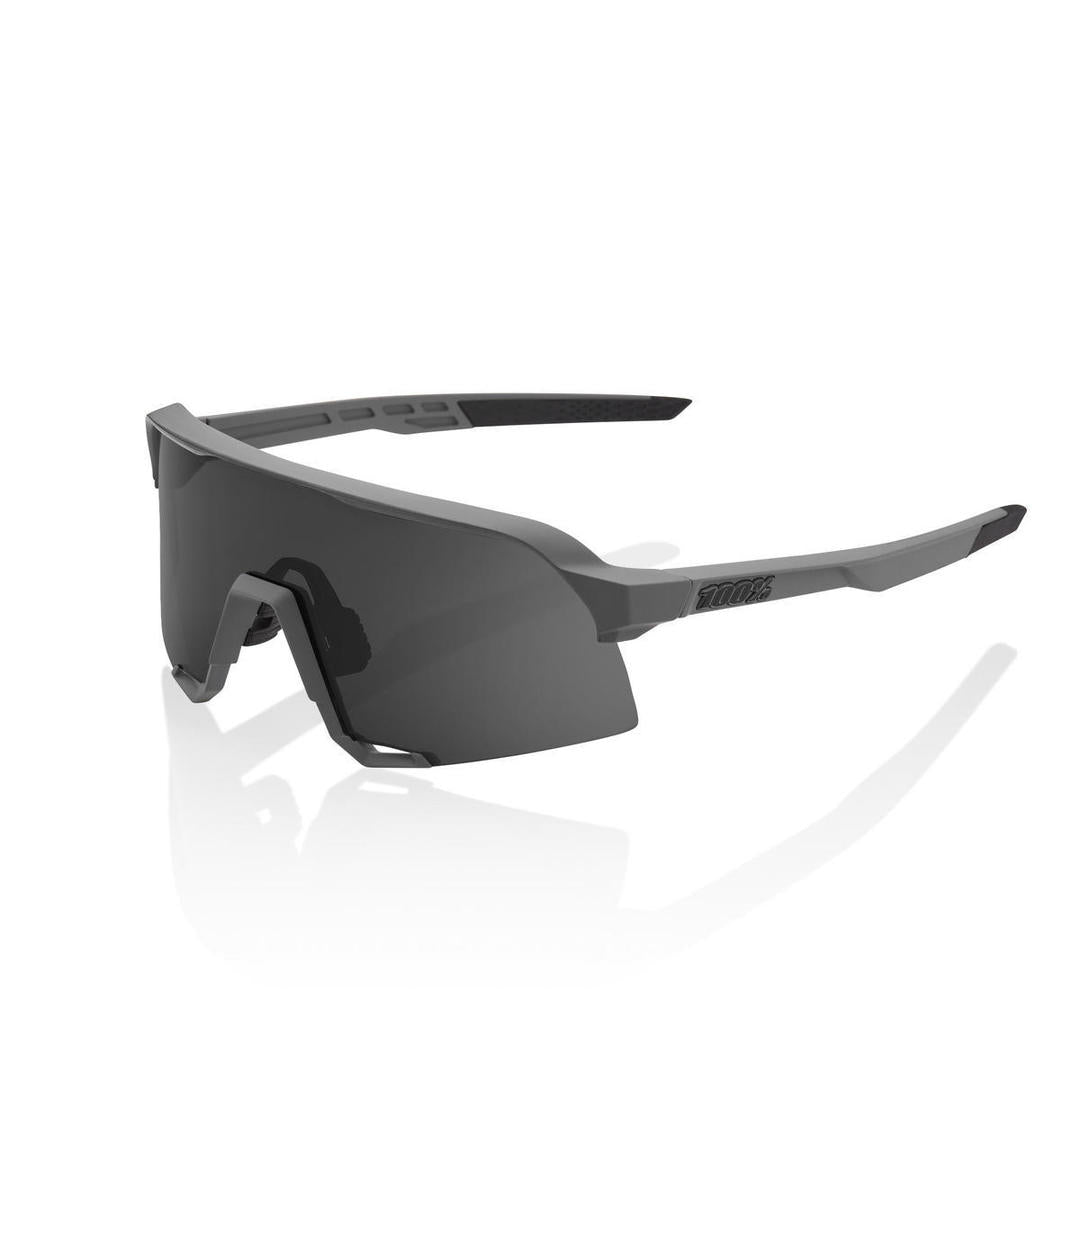 RIDE 100% Eyewear S3 - Soft Tact Grey/Smoke Lens